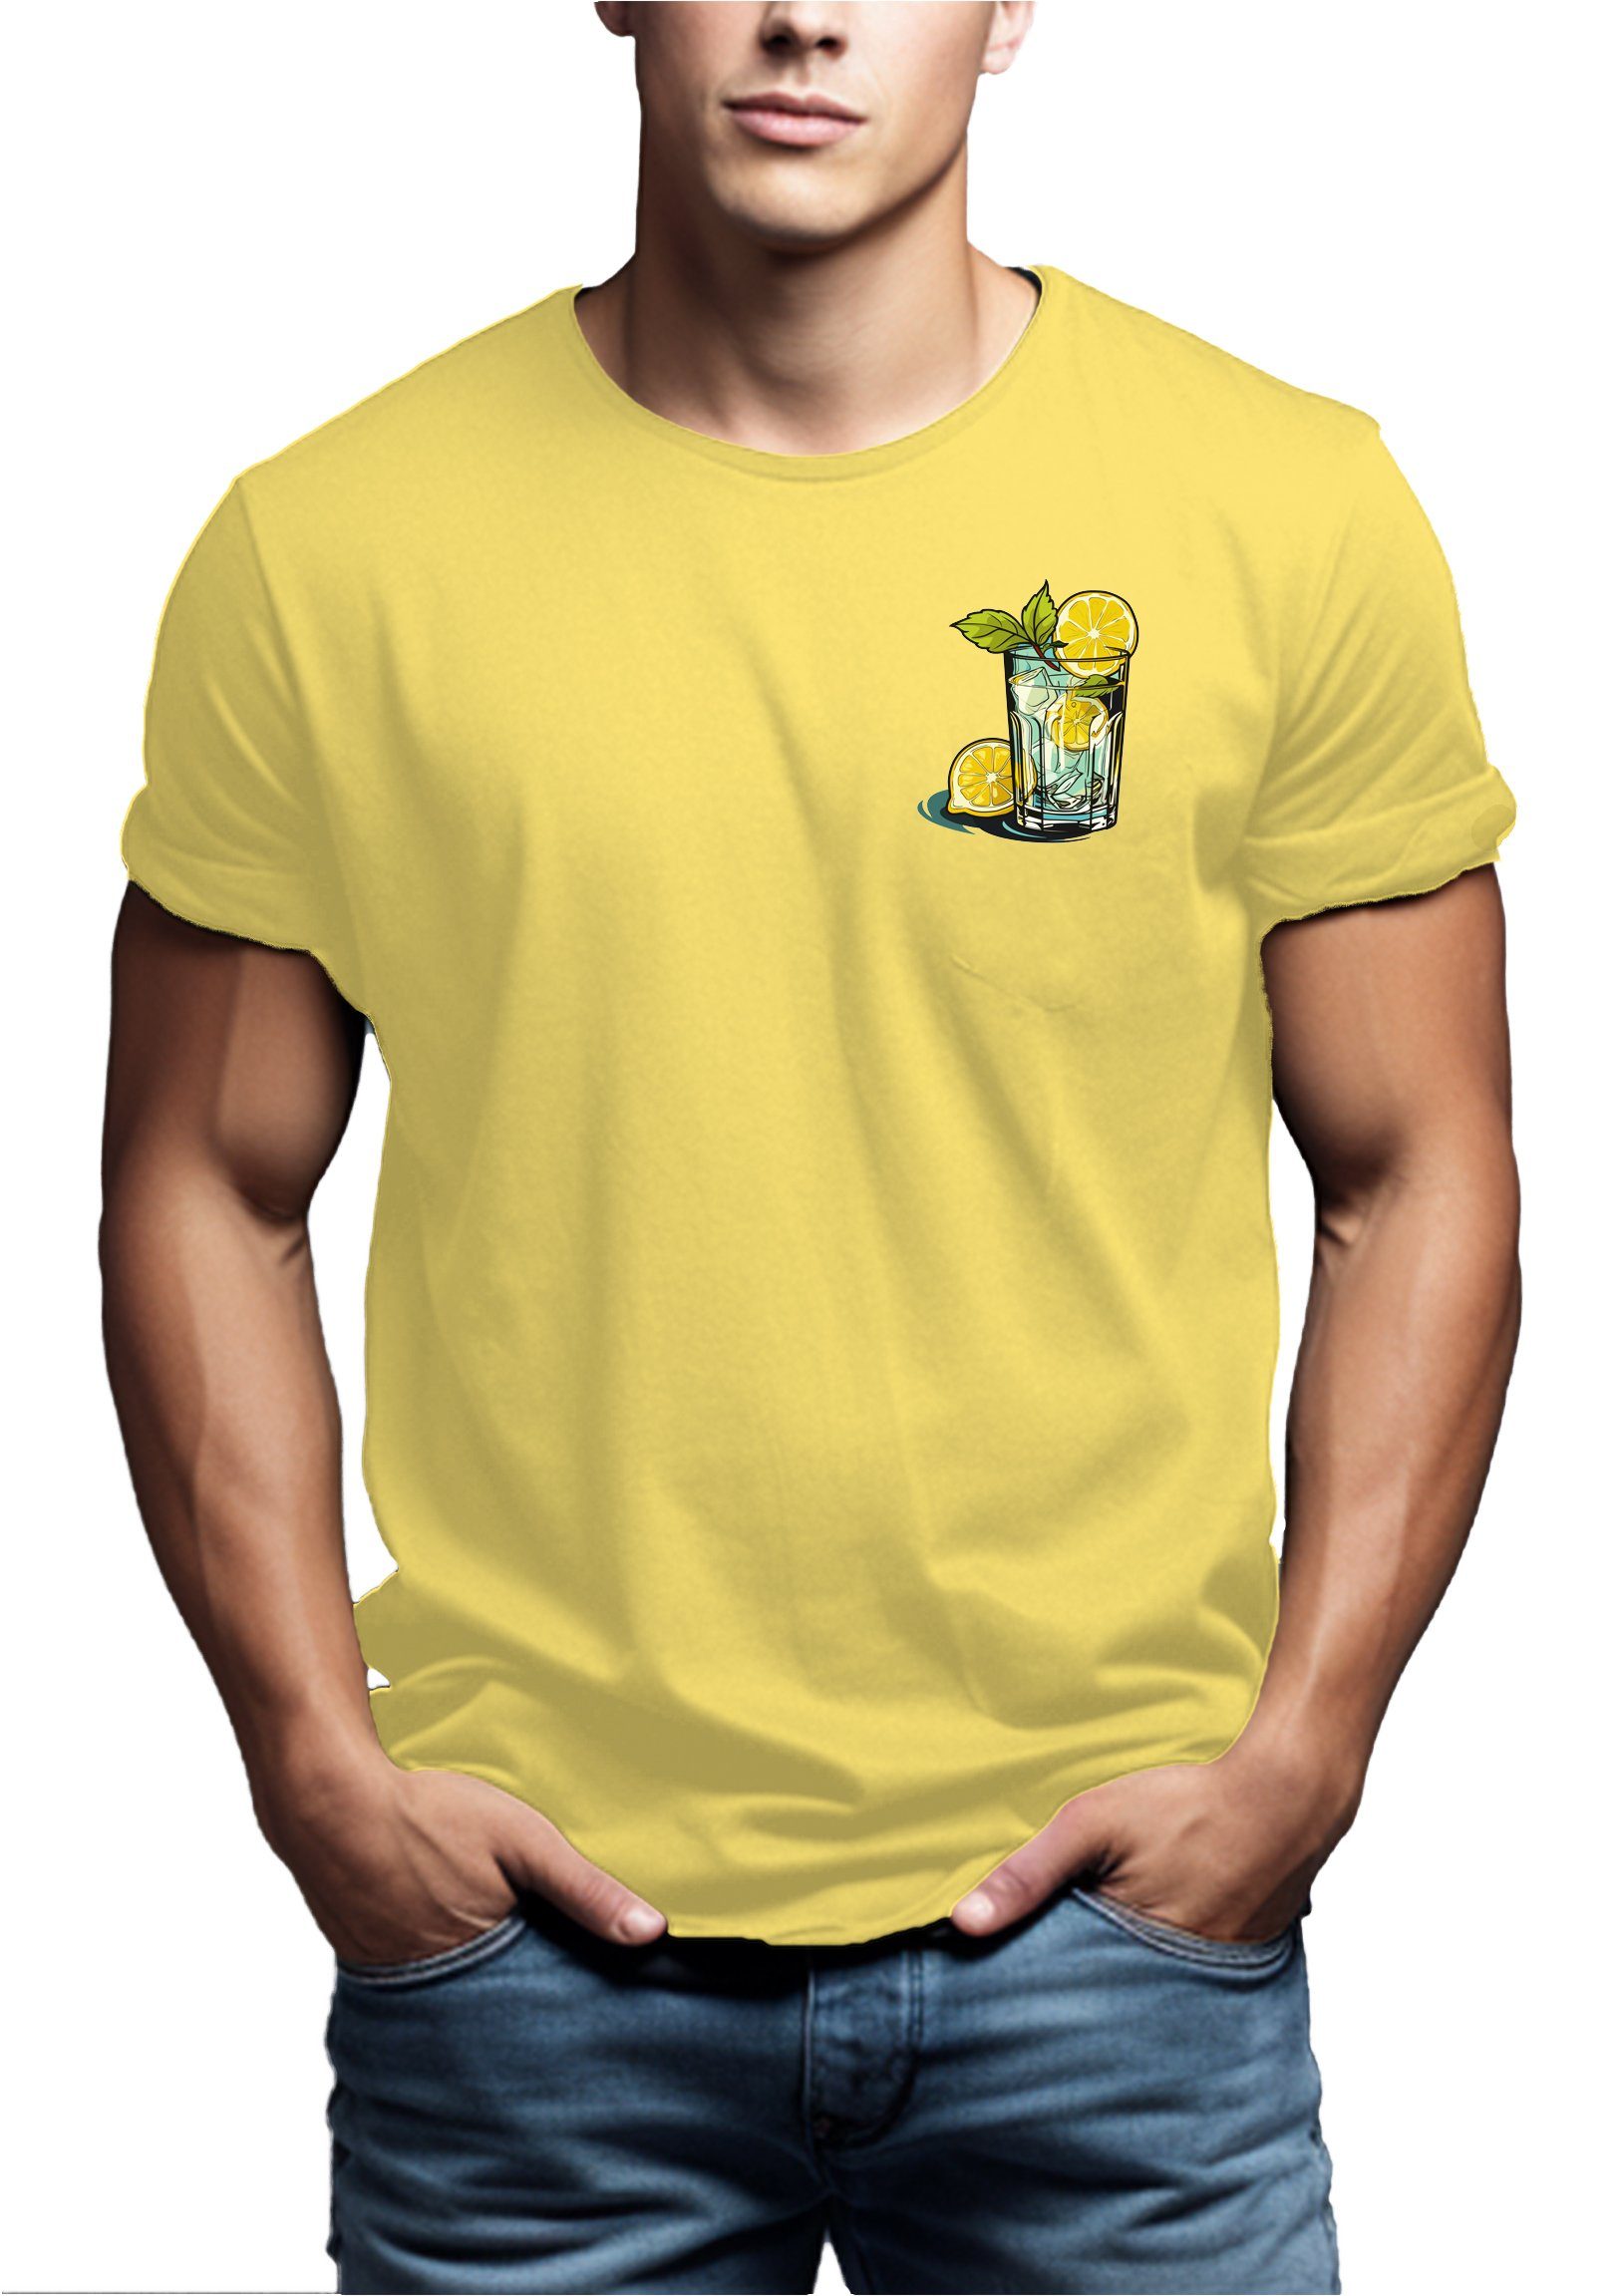 MAKAYA T-Shirt Herren Gin Tonic Sommer Gläser Baumwolle Gelb Print Aufdruck Motiv